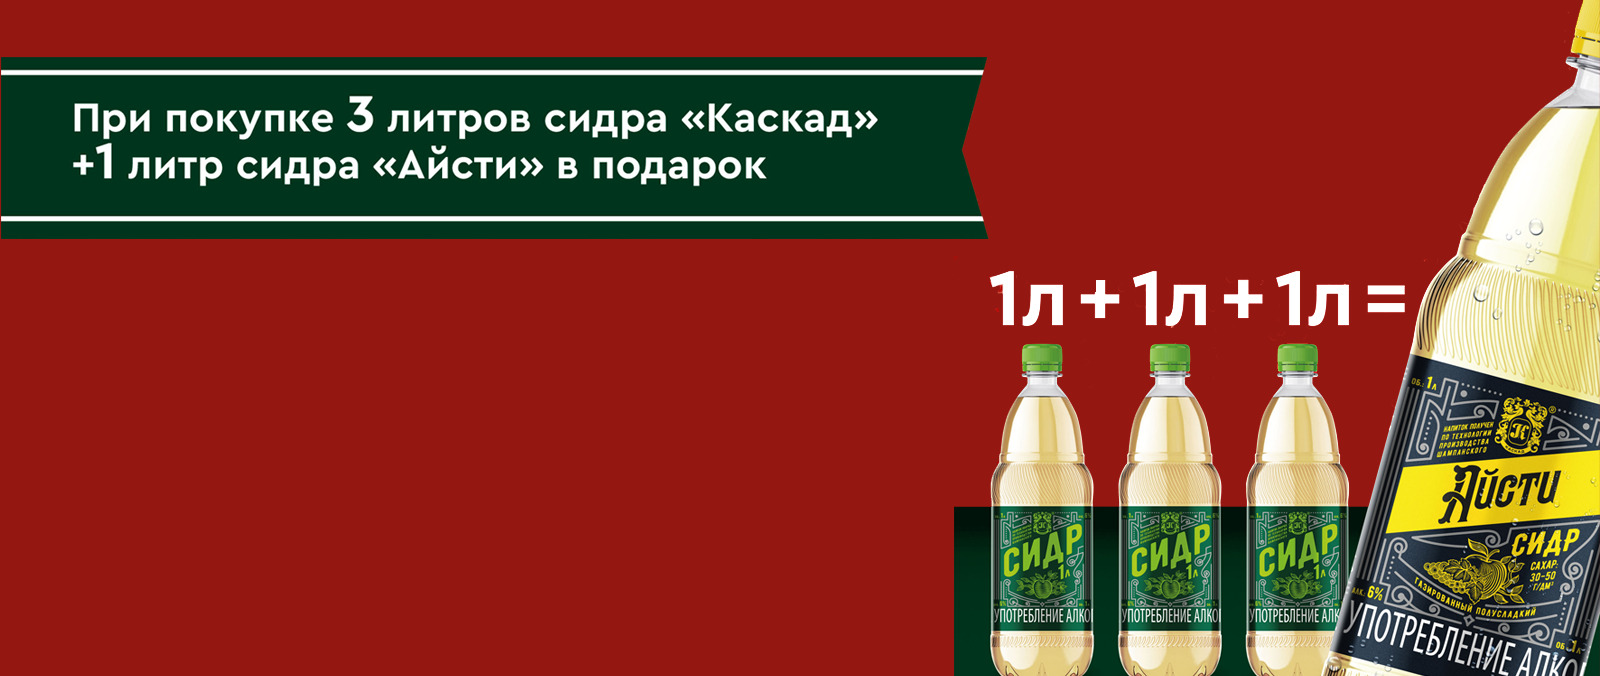 Купить пиво оптом с доставкой в Москве и области у Келлер